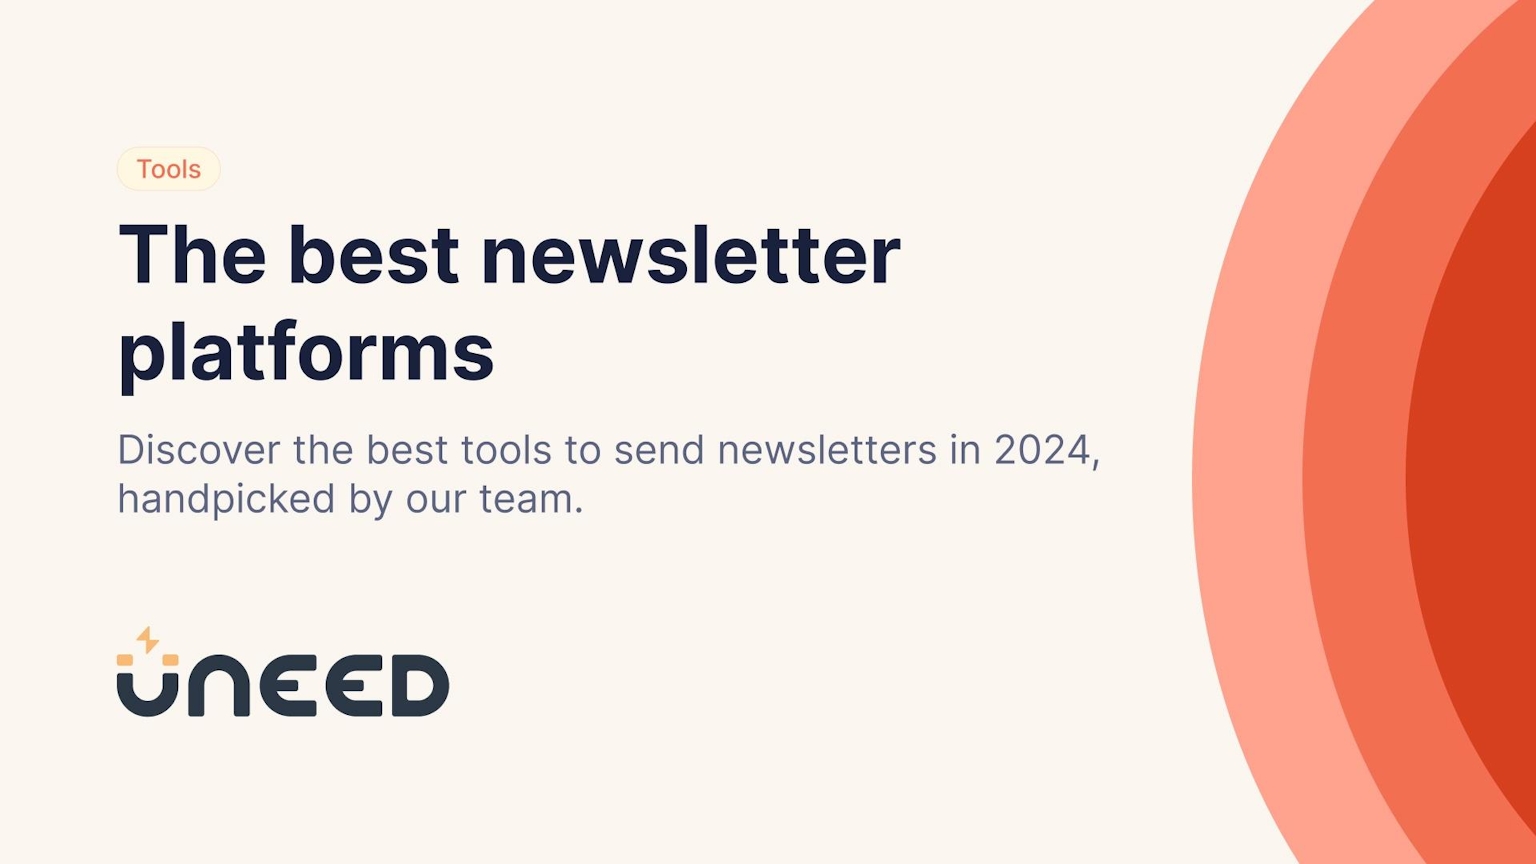 The best newsletter platforms in 2024